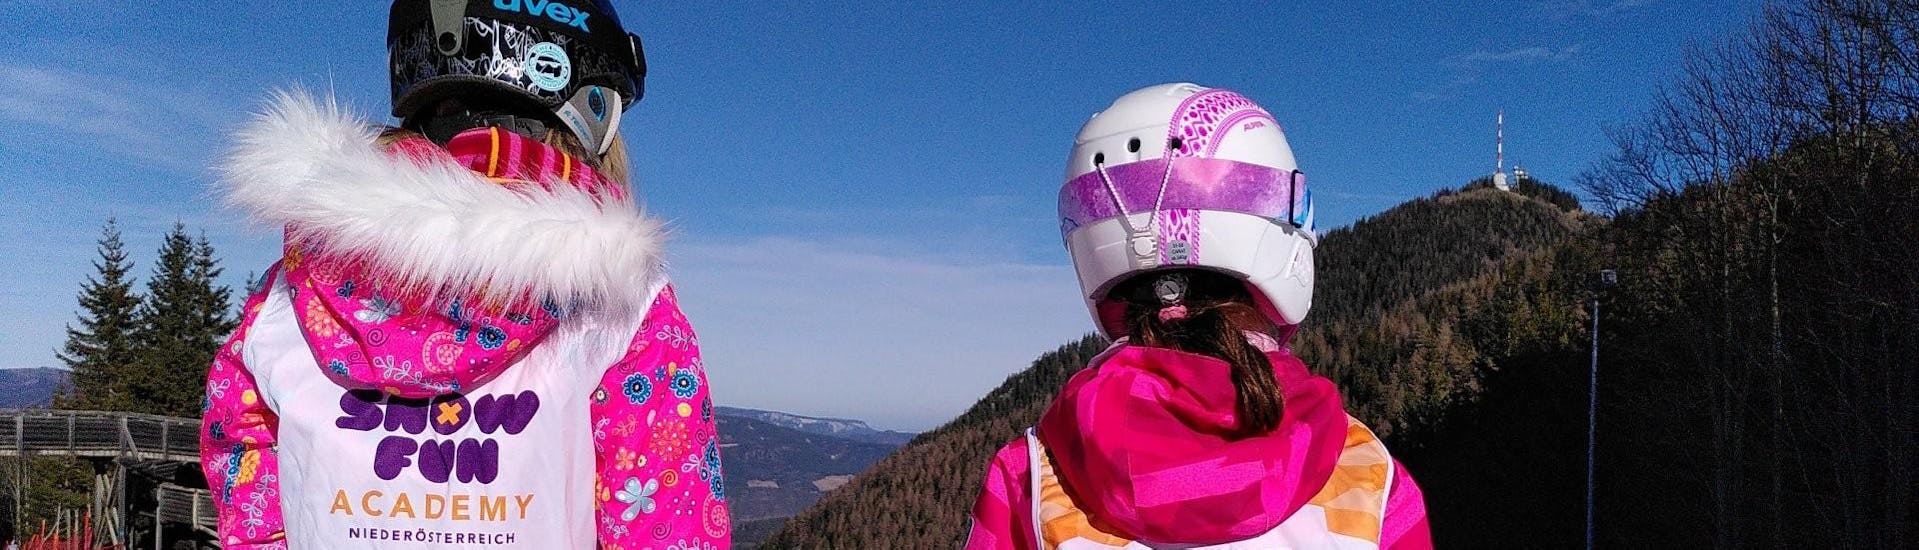 Zwei kleine Mädchen während ihrem Privaten Kinder-Skikurs für alle Levels.